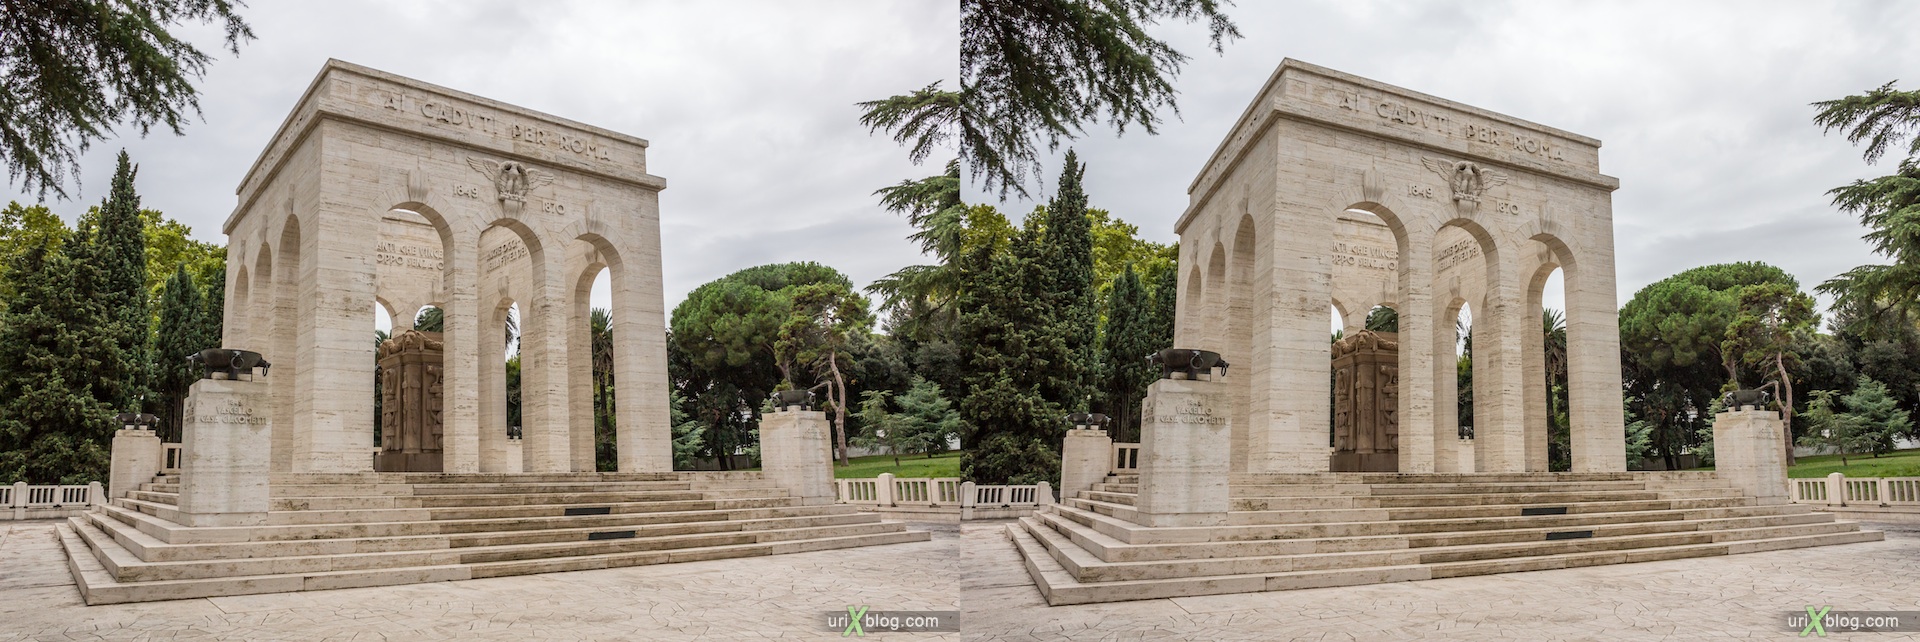 2012, Mausoleum of Garibaldi, Via Garibaldi street, Rome, Italy, Europe, 3D, stereo pair, cross-eyed, crossview, cross view stereo pair